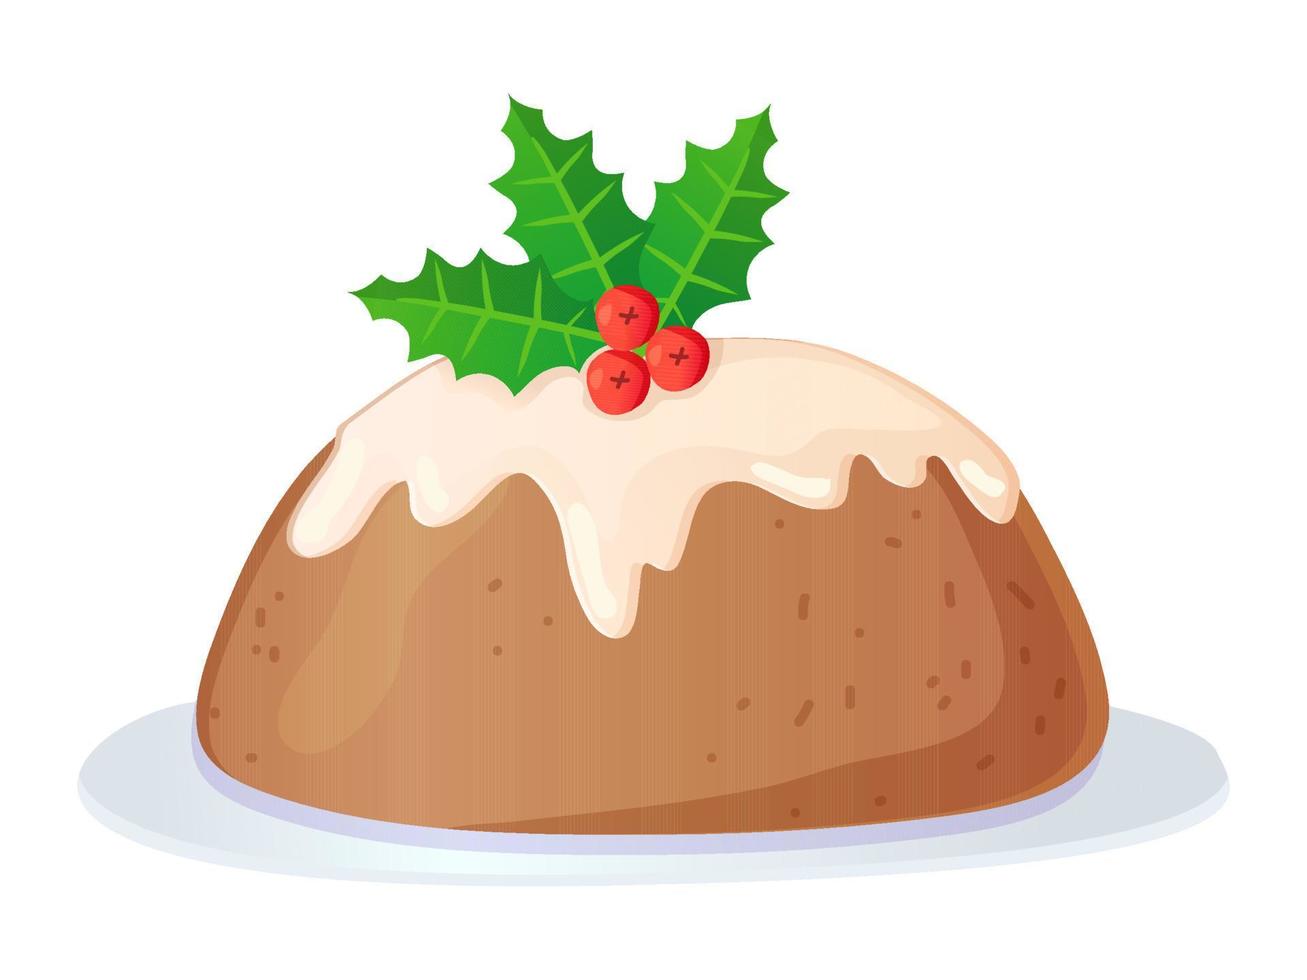 traditionell engelsk jul pudding med glasyr och järnek. vektor illustration isolerat på vit